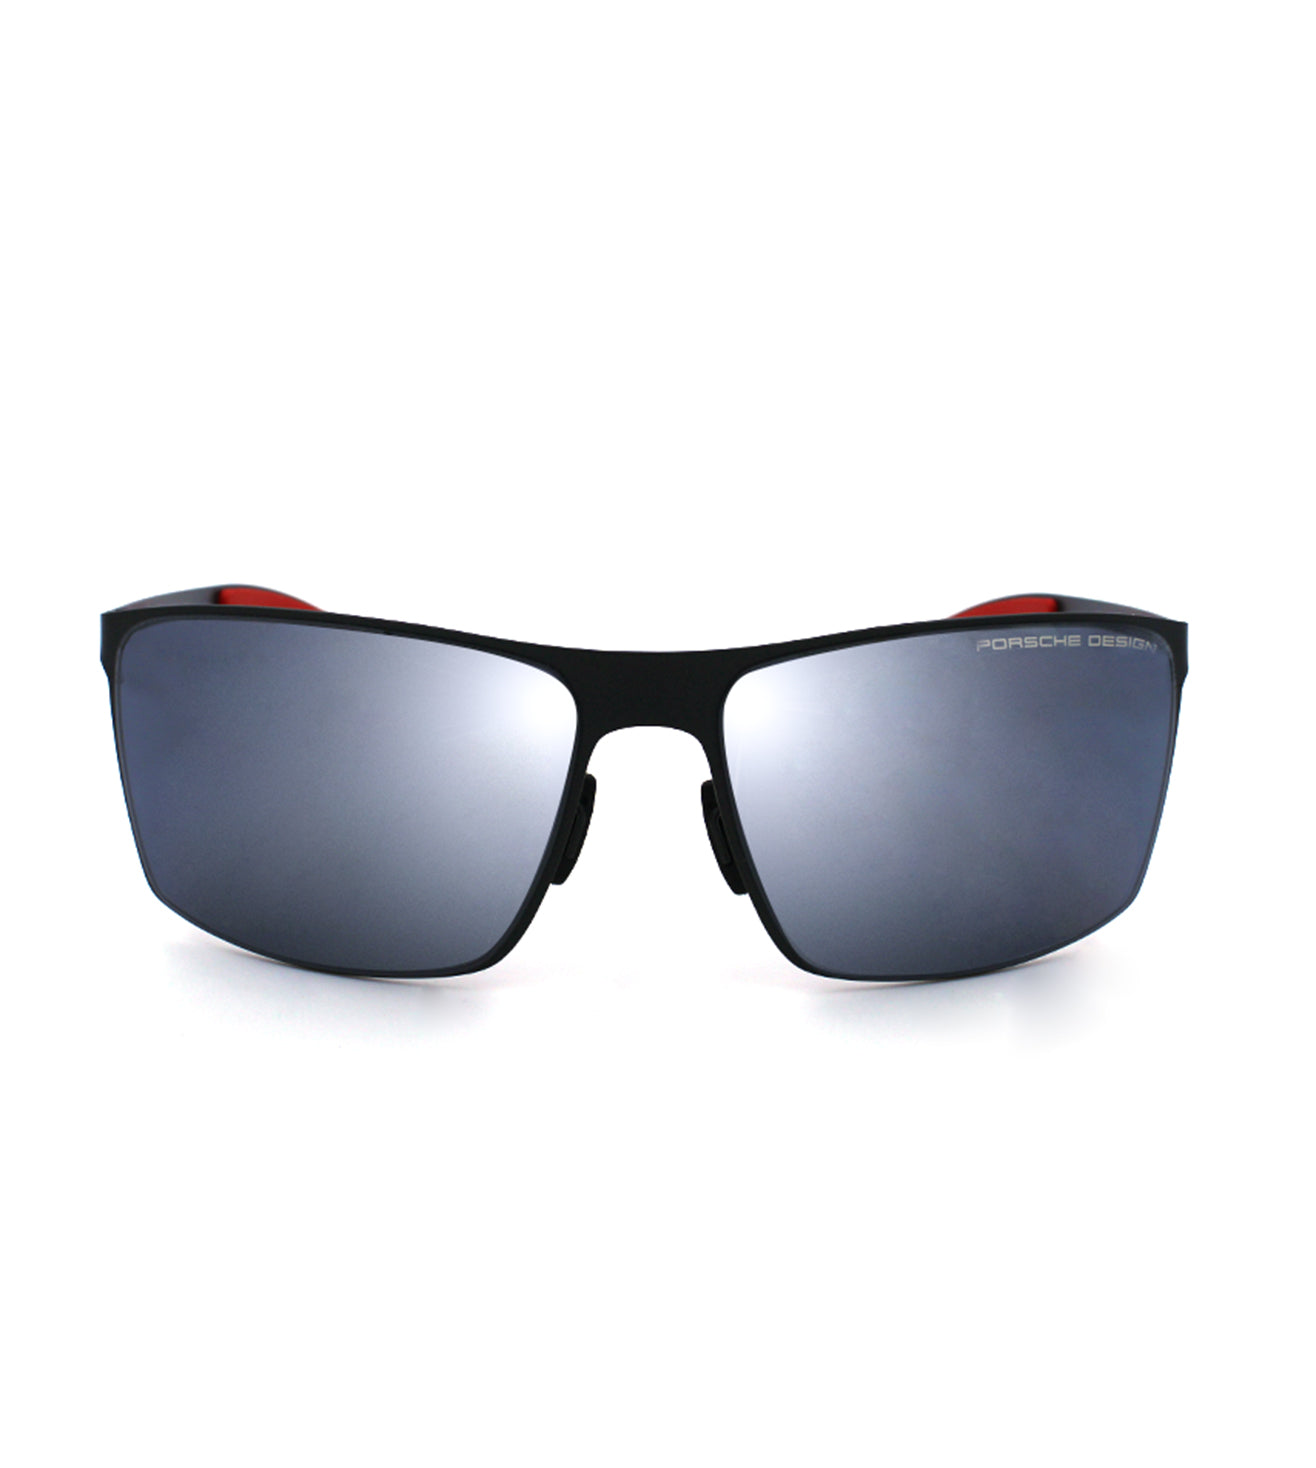 Porsche Design Unisex Blue/Black/Silver-Mirrored Square Sunglasses